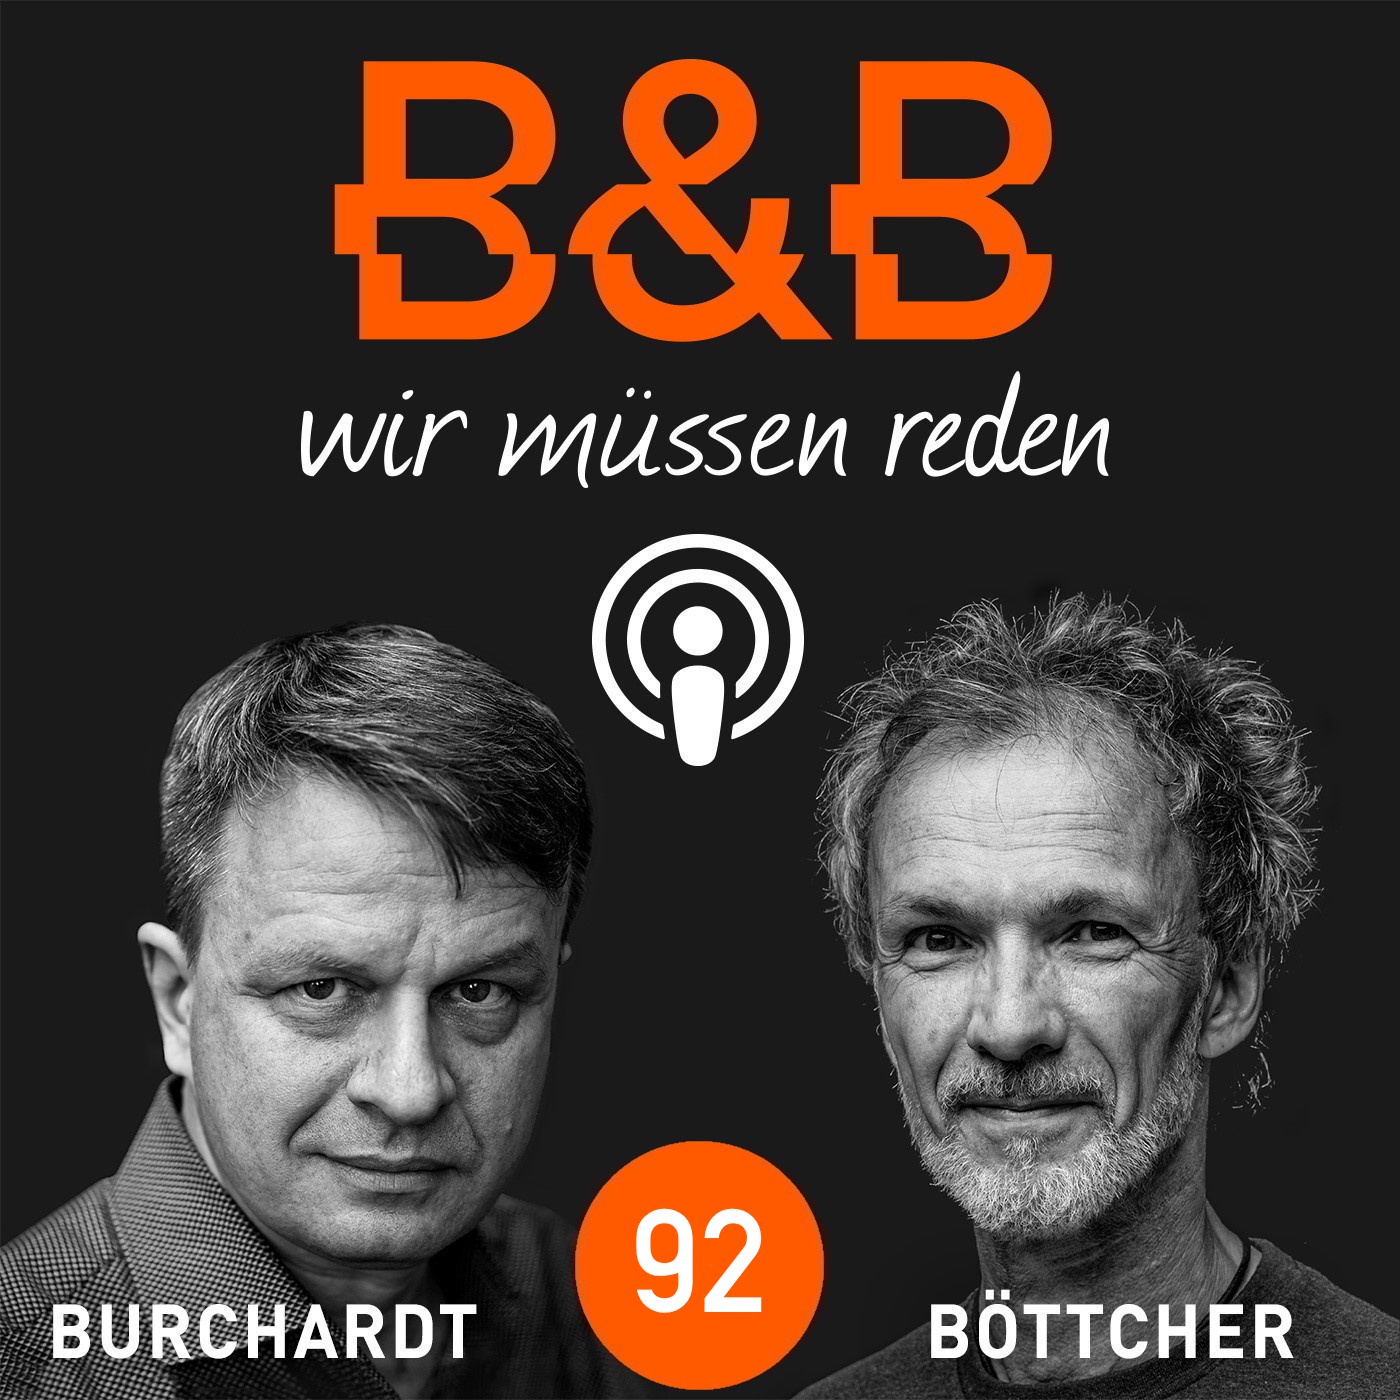 B&B #92 Burchardt & Böttcher: Advent, Advent, der Haushalt brennt.